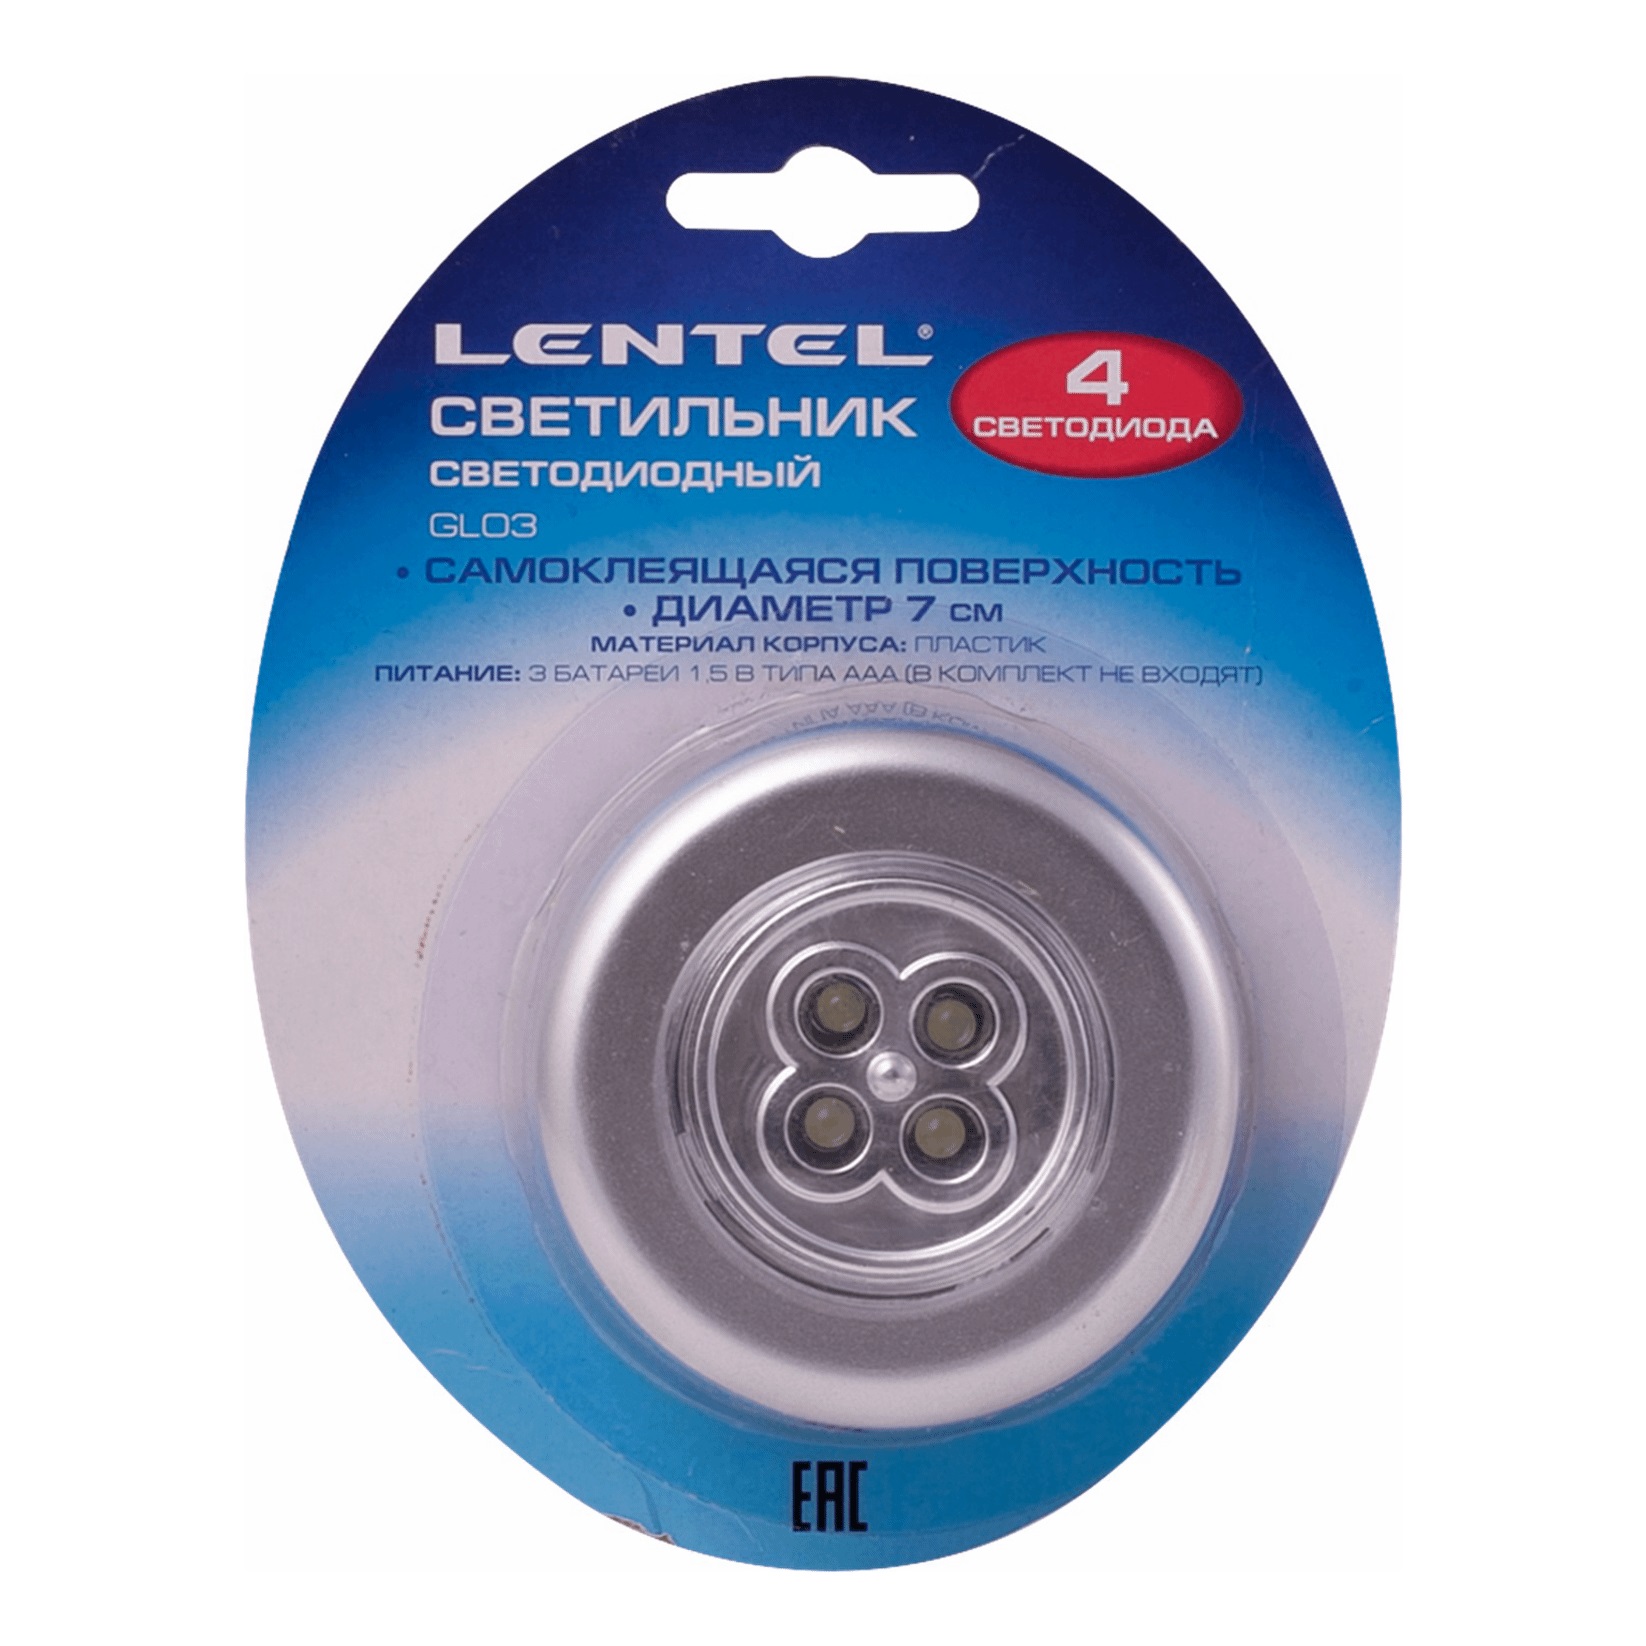 Туристический фонарь Lentel GL03, silver, 1 режим